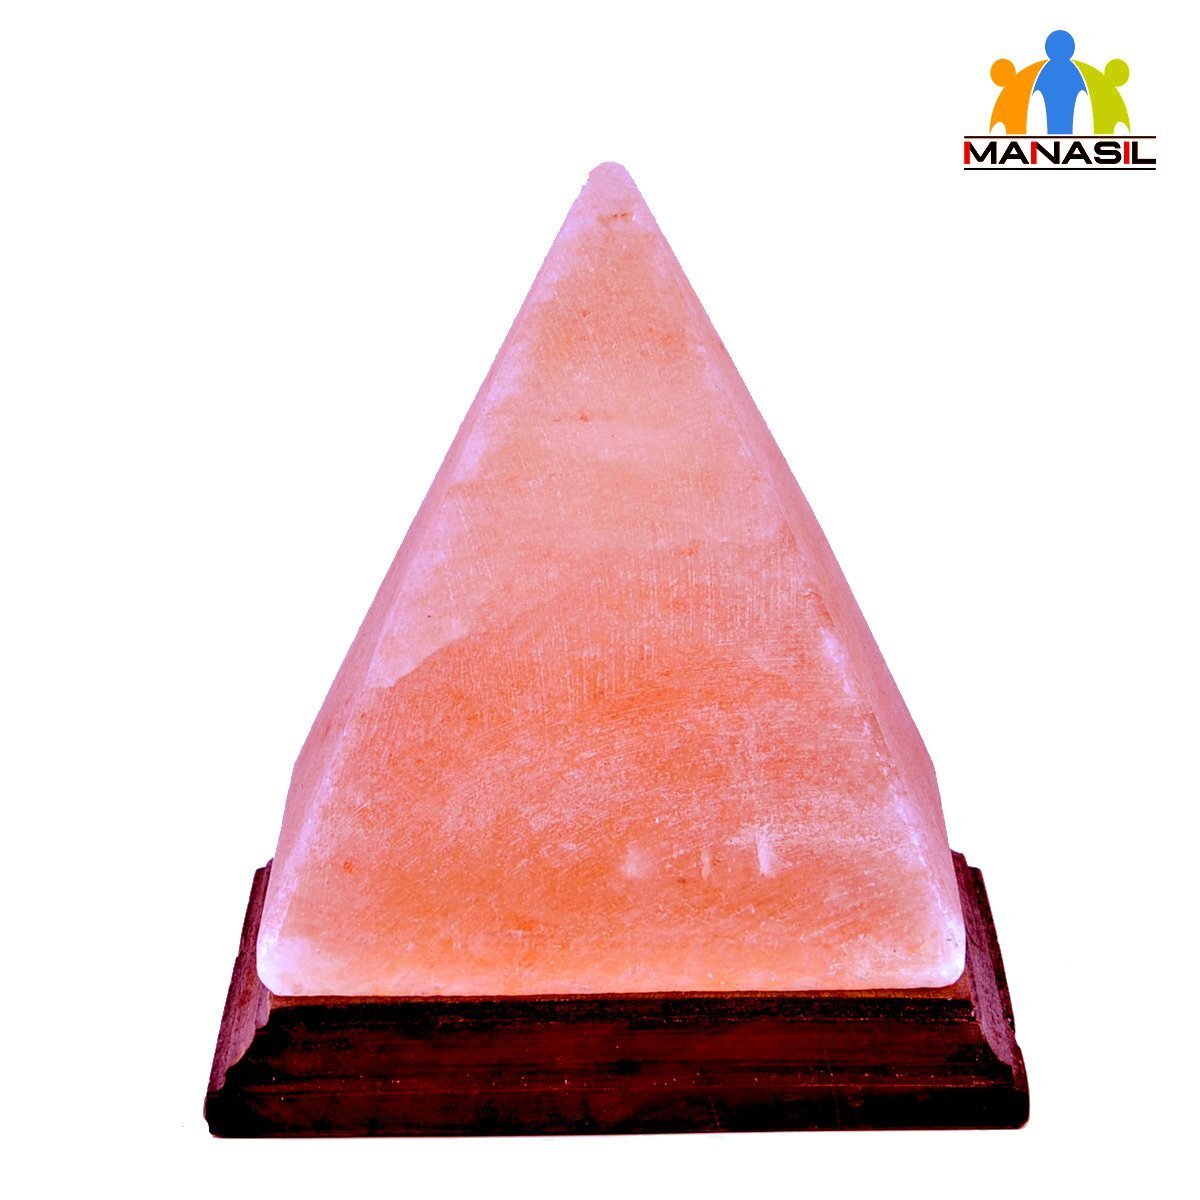 Gs-01 7 In. Himalayan Salt Natural Lamp - Pyramid - 6-8 Lbs